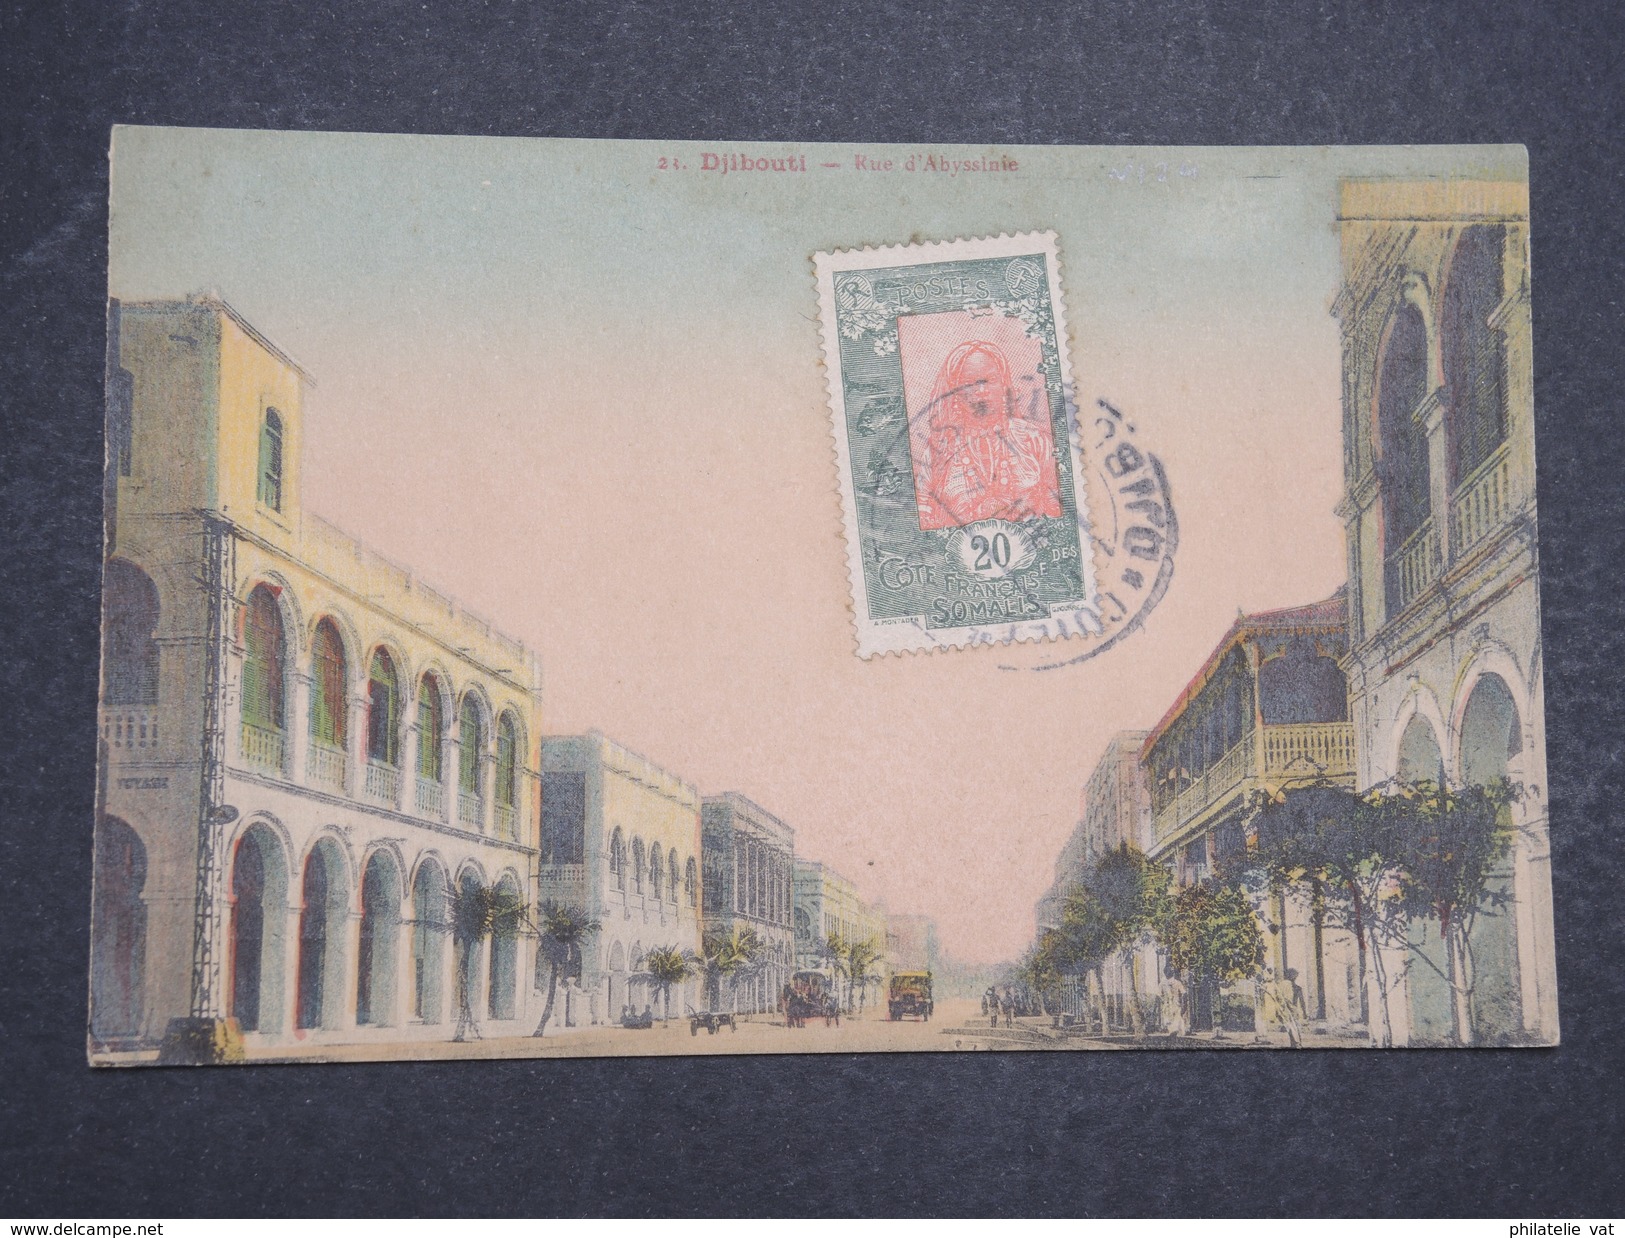 COTE FRANçAISE DES SOMALIS - Carte Postale Djibouti Pour Paris -Nov 1934 - P22098 - Brieven En Documenten